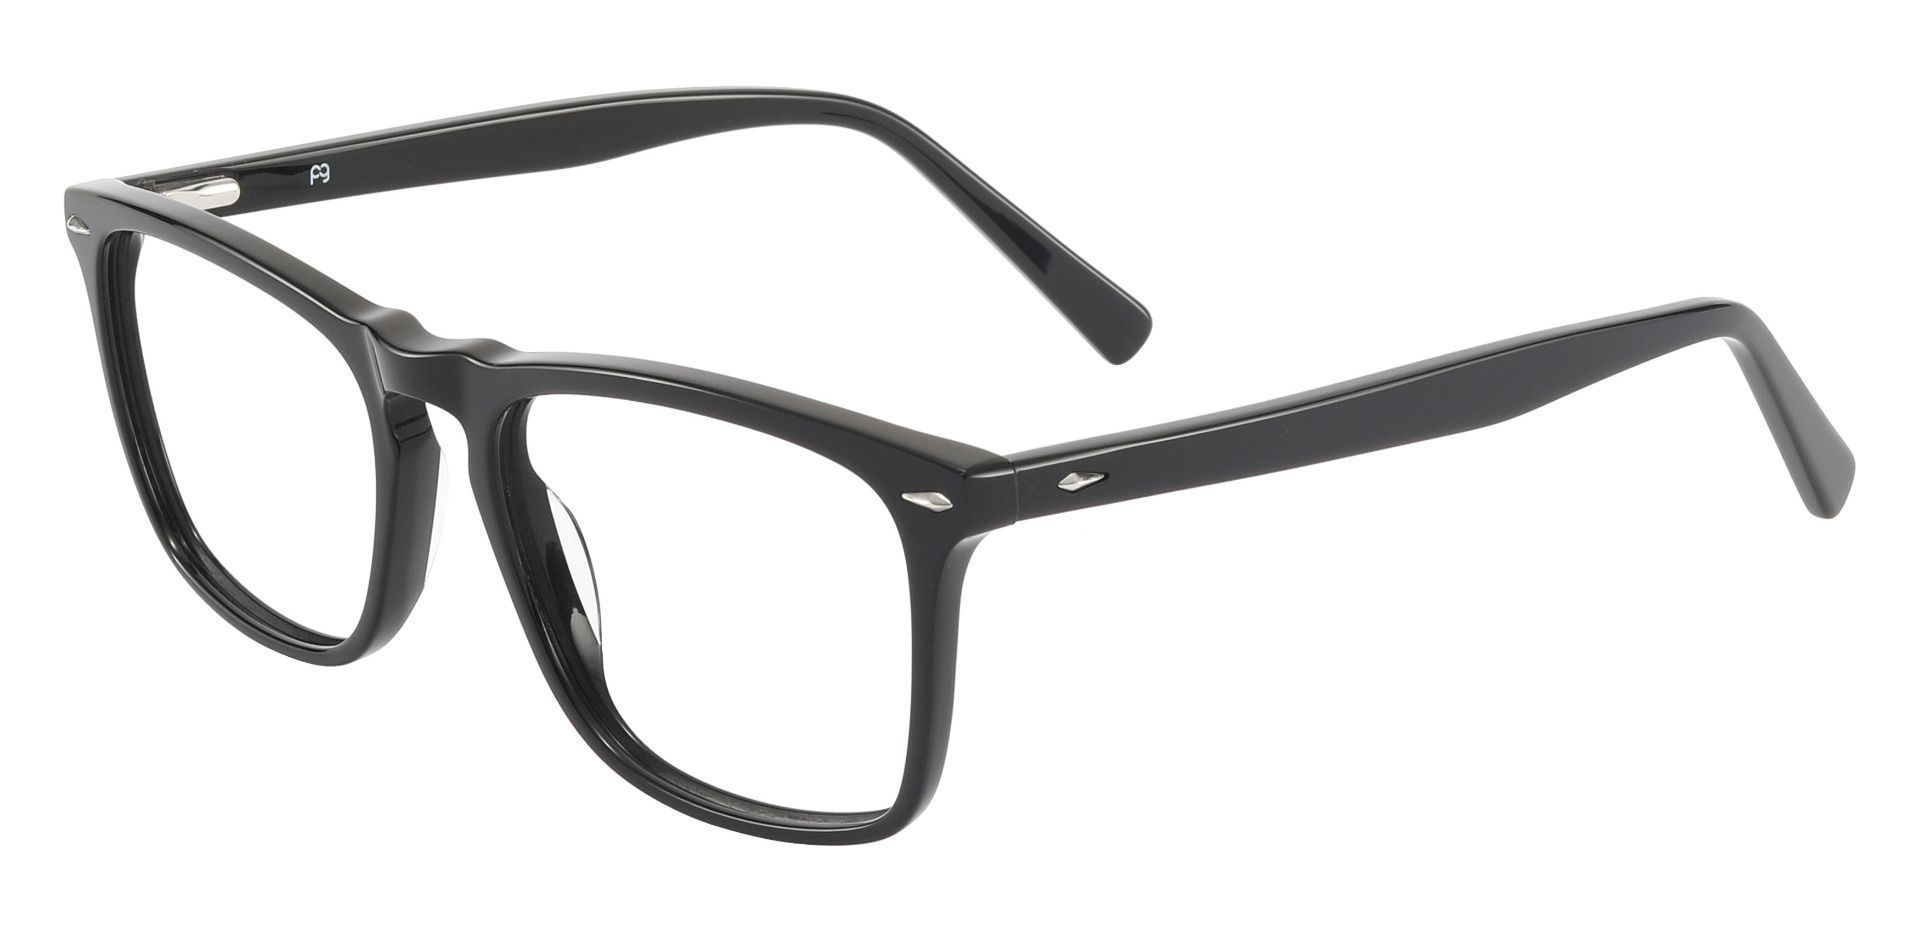 Topton Rectangle Prescription Glasses - Black